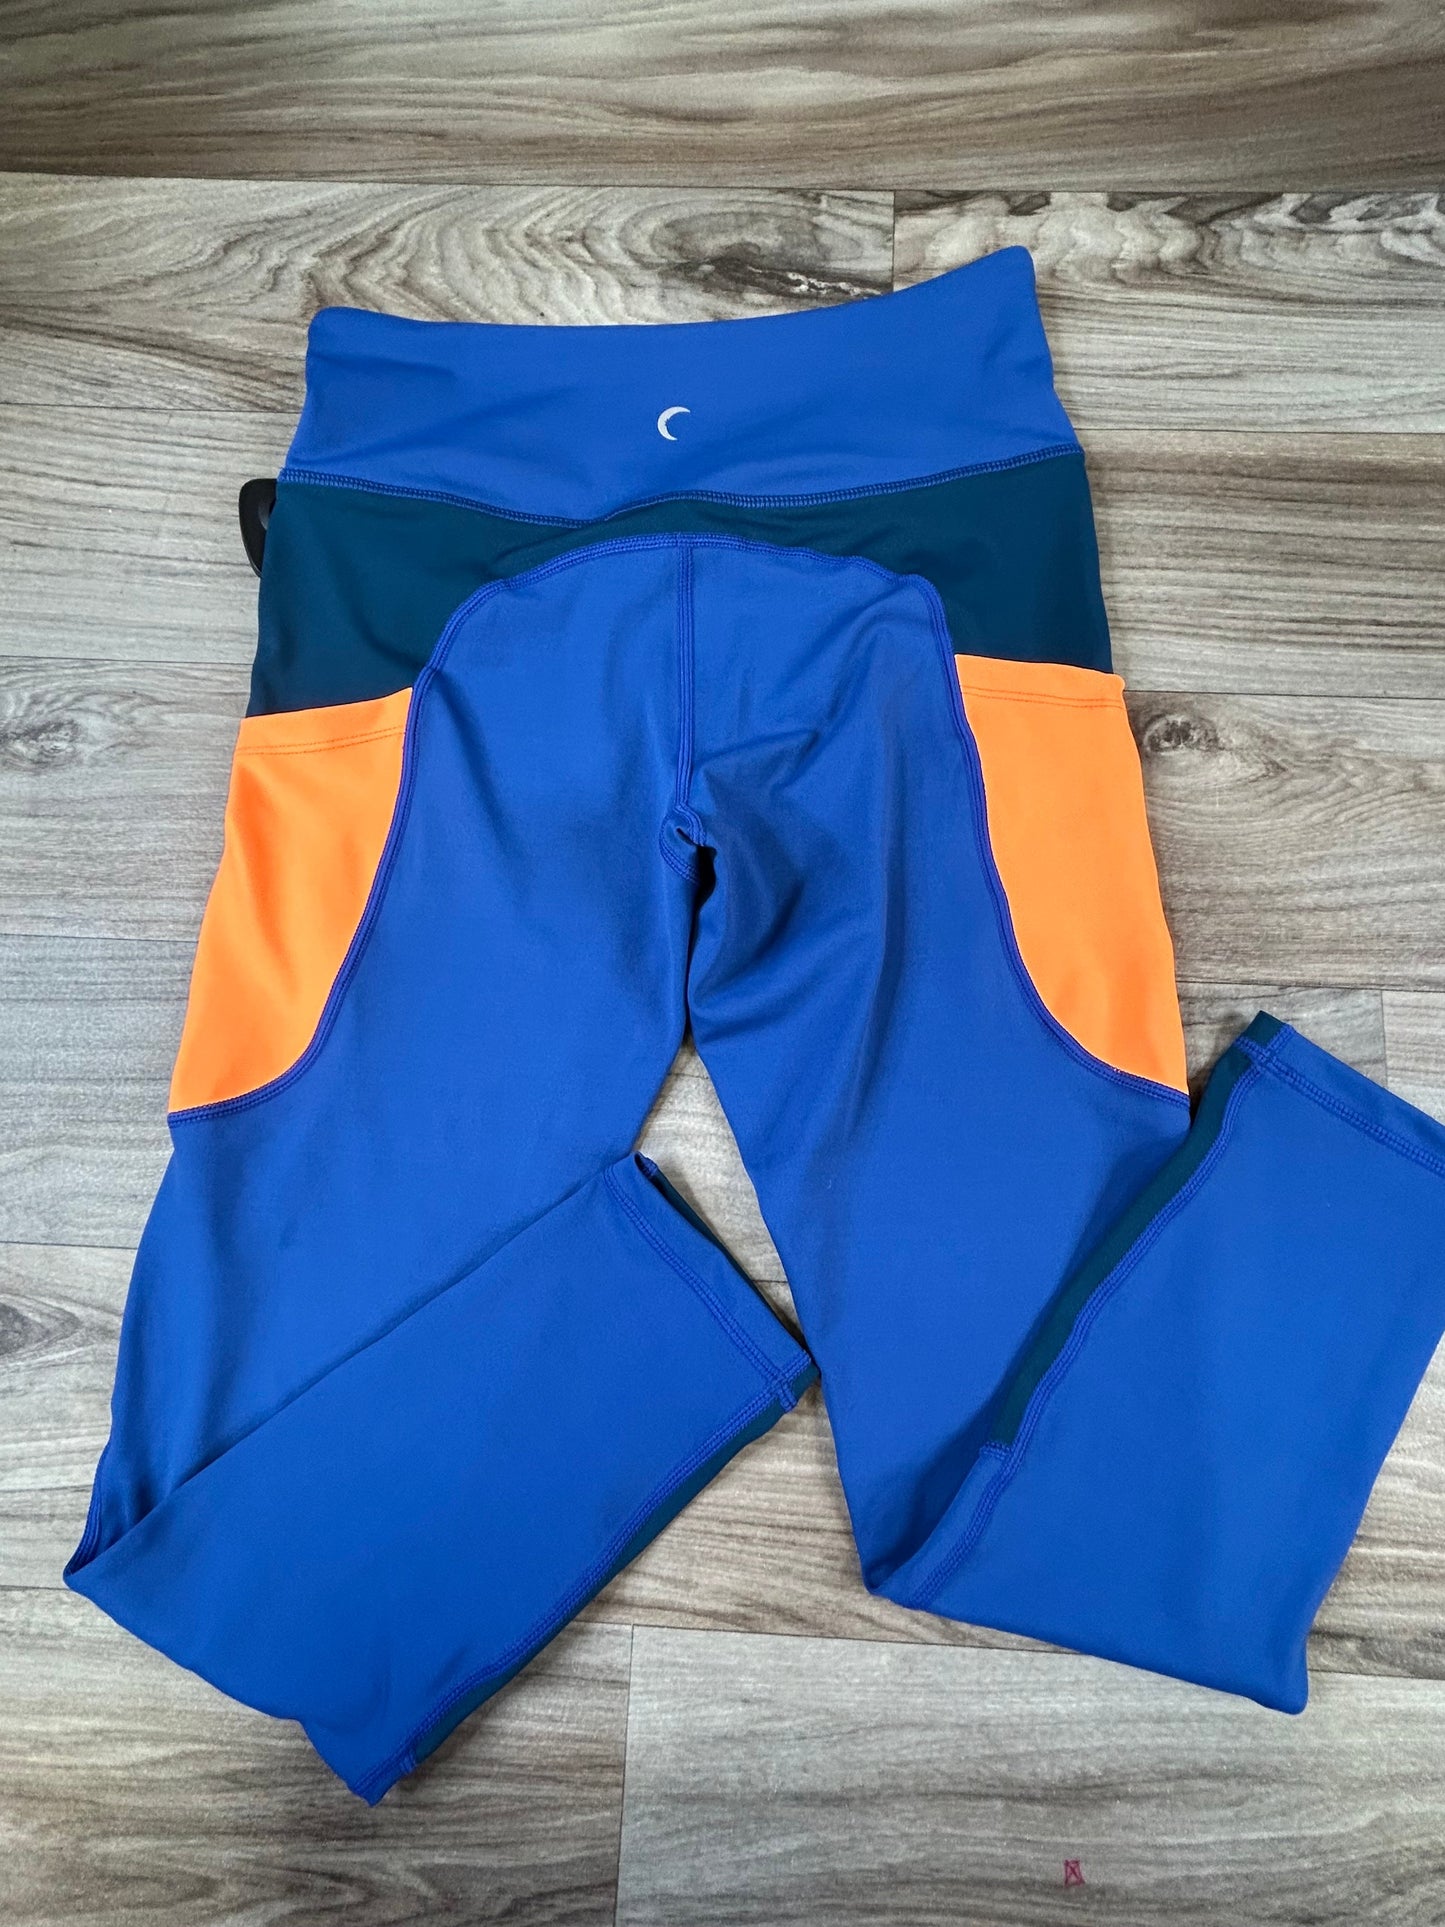 Blue & Orange Athletic Leggings Zyia, Size S